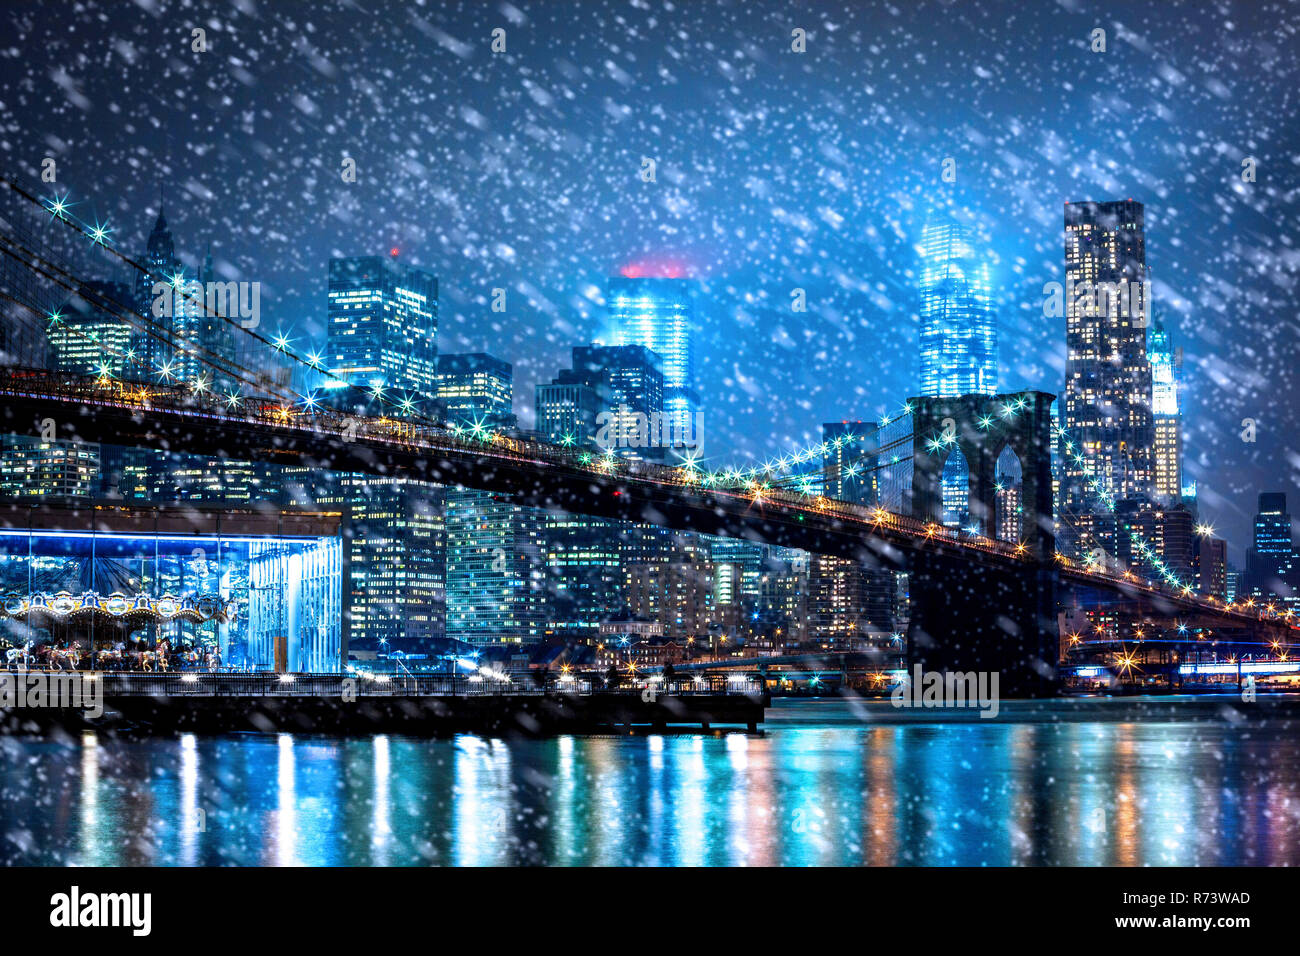 La chute de neige à New York City at night Banque D'Images